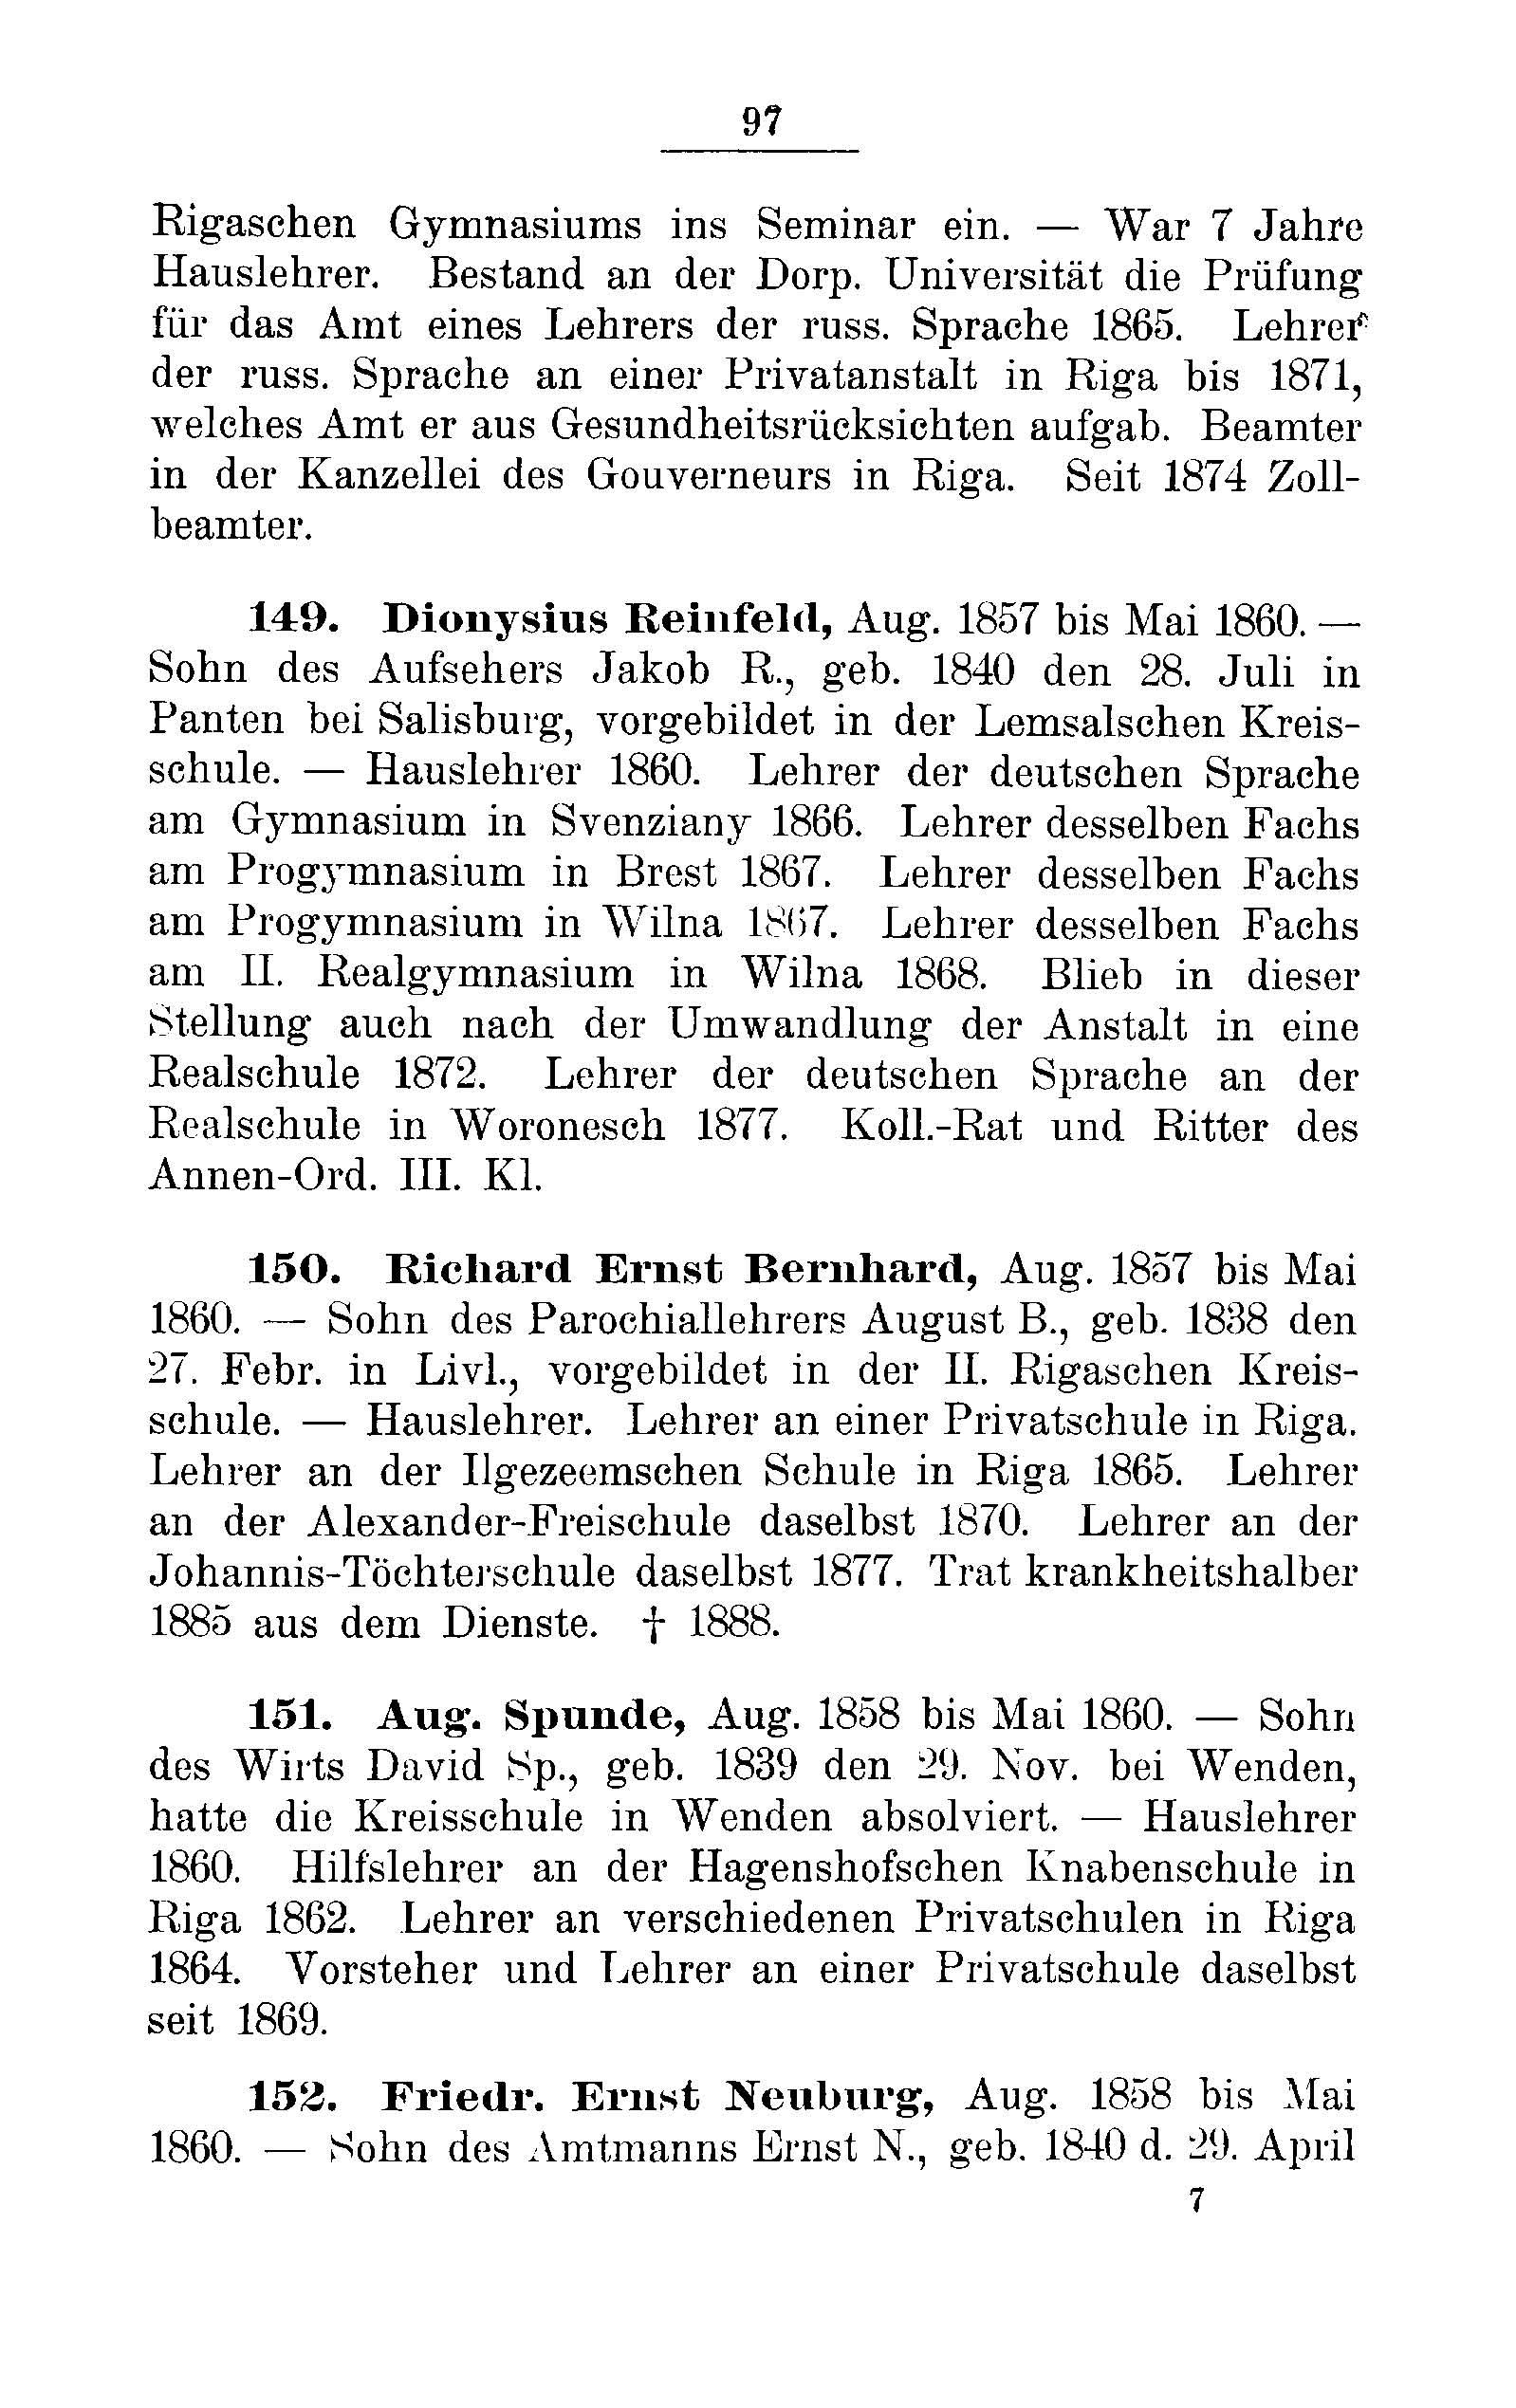 Das Erste Dorpatsche Lehrer-Seminar (1890) | 100. Main body of text